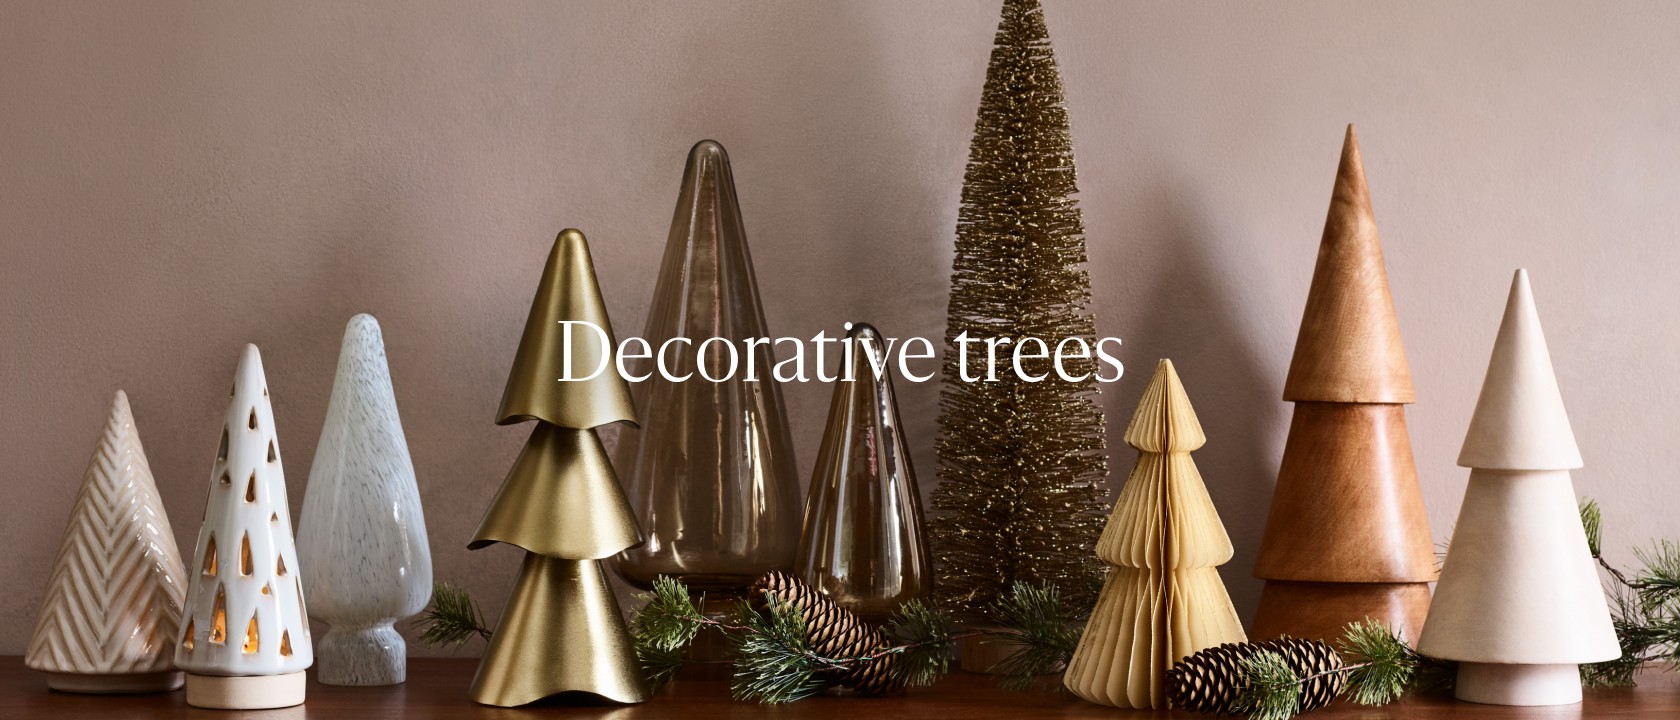 Decorative trees